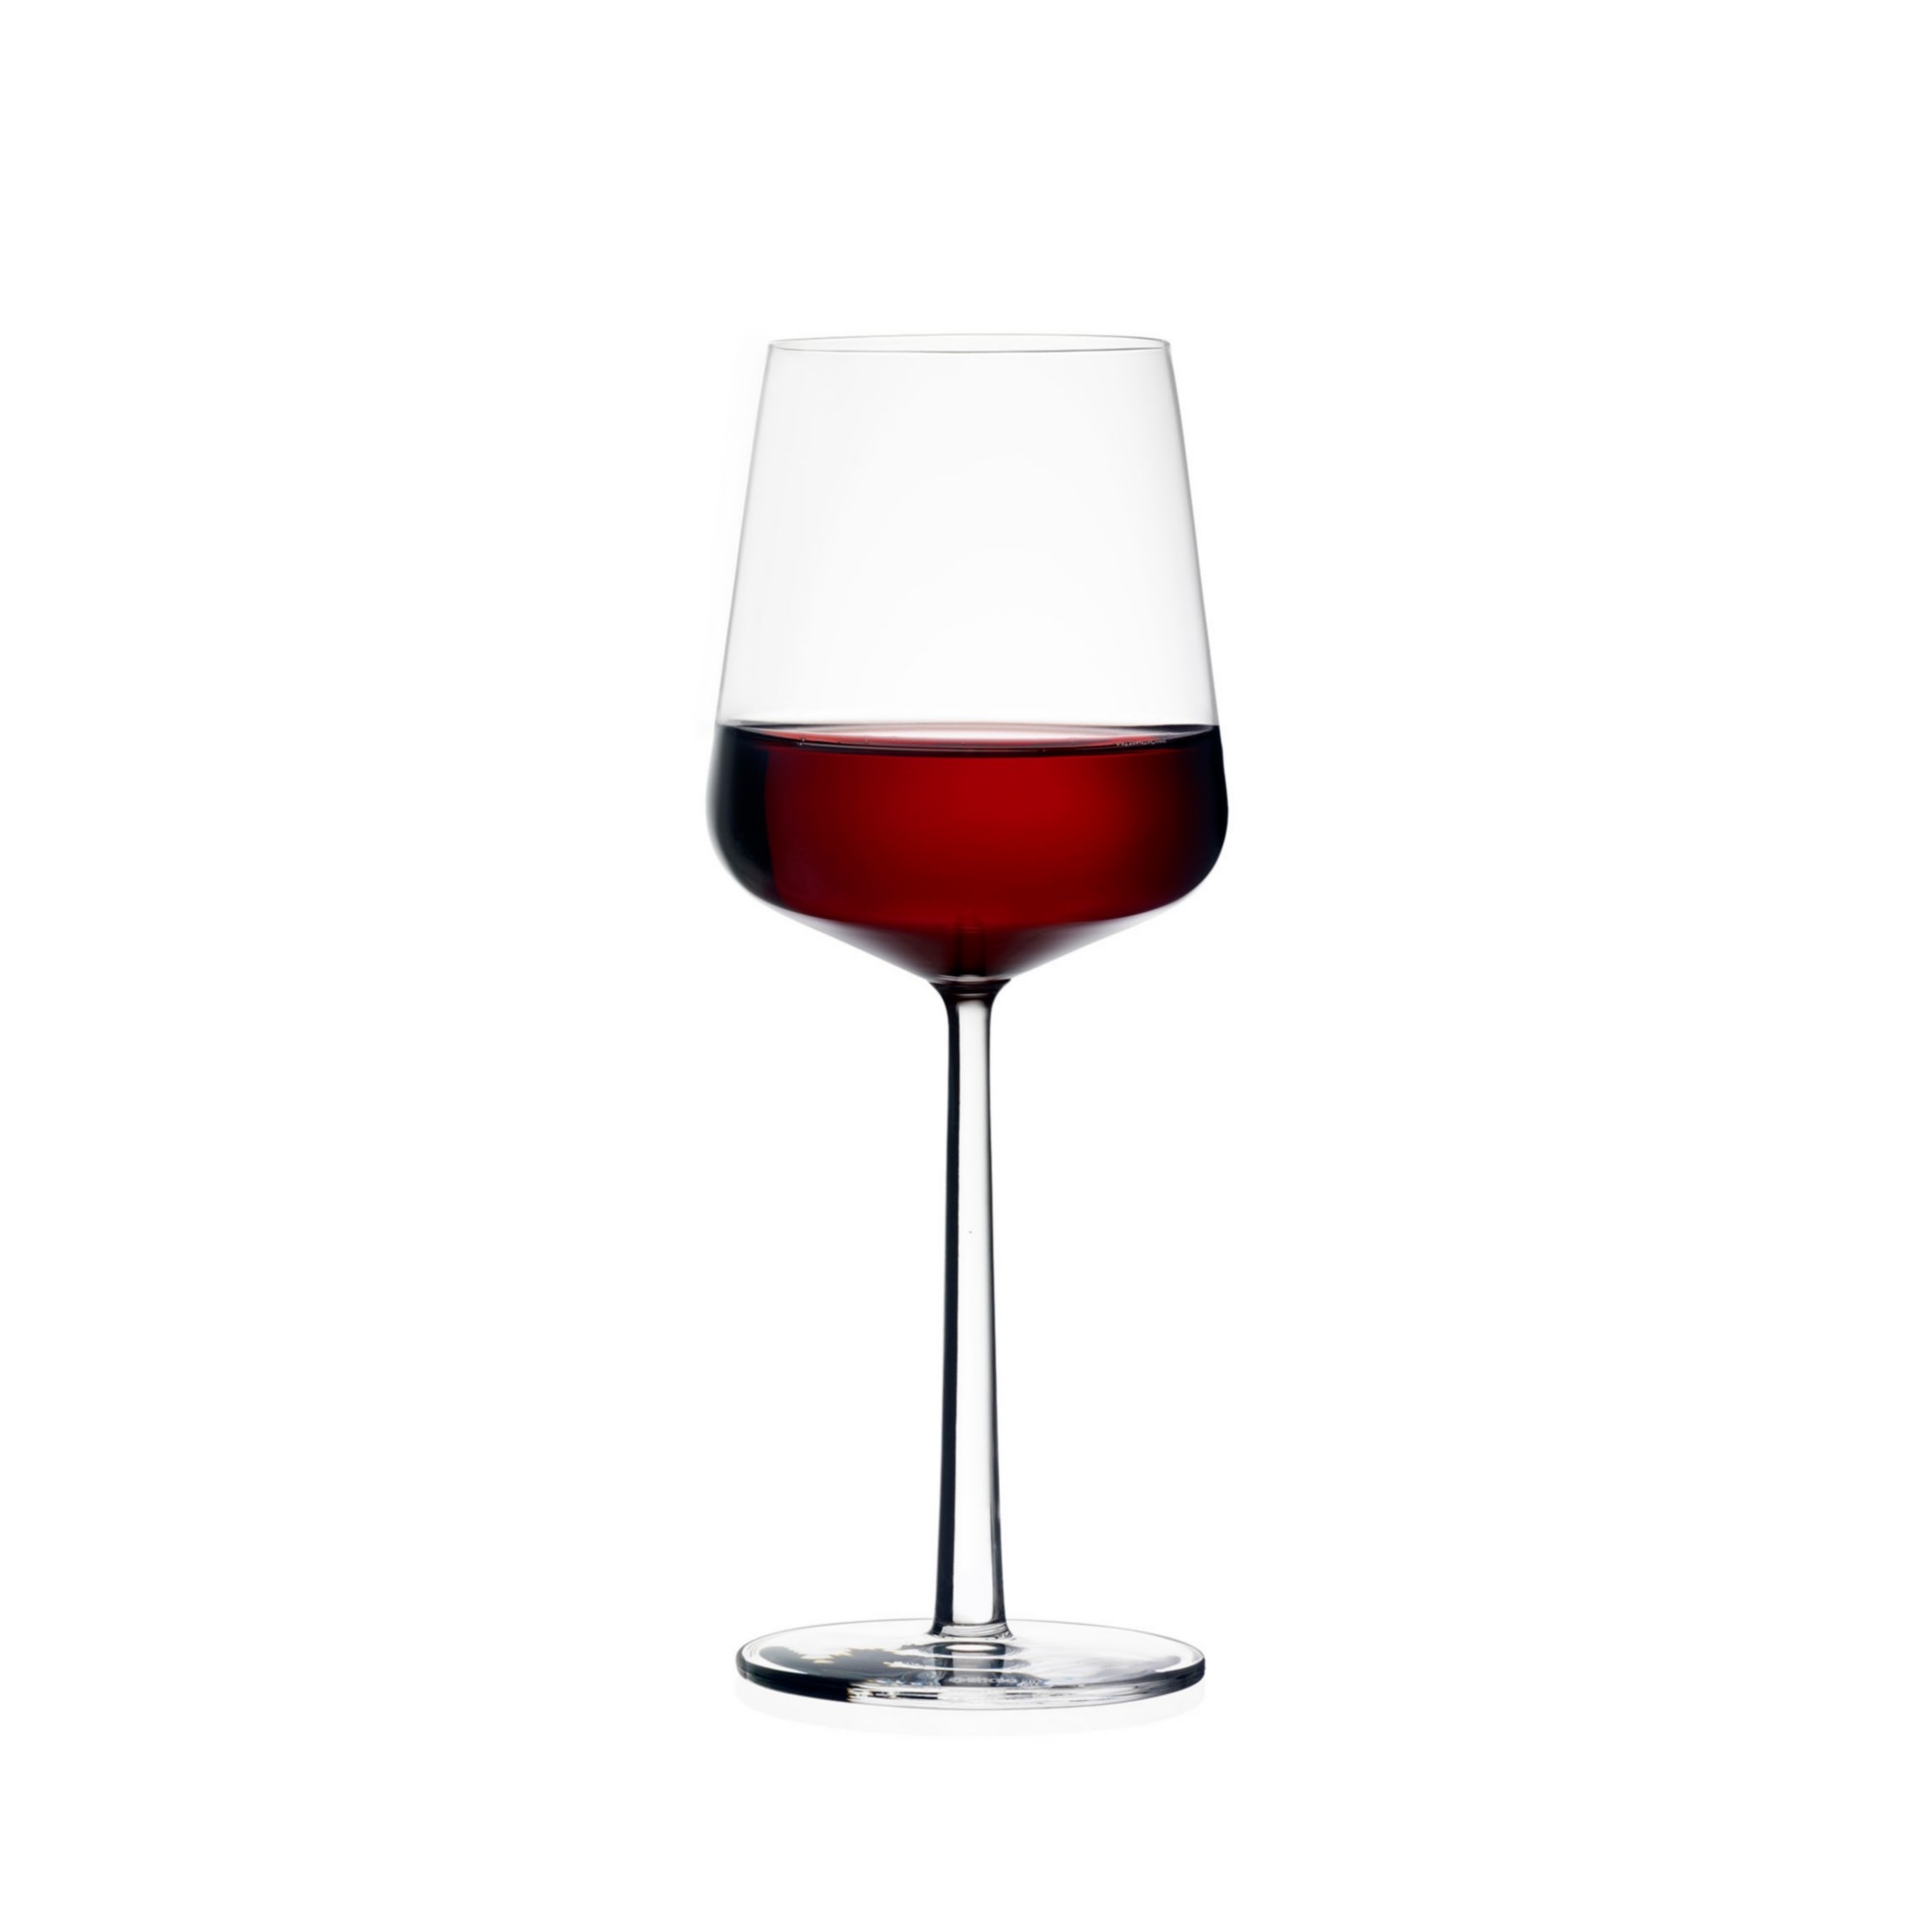 En team campus Bedoel iittala Essence wijnglas rood 45 cl. - 2 stuks - Design van Teun